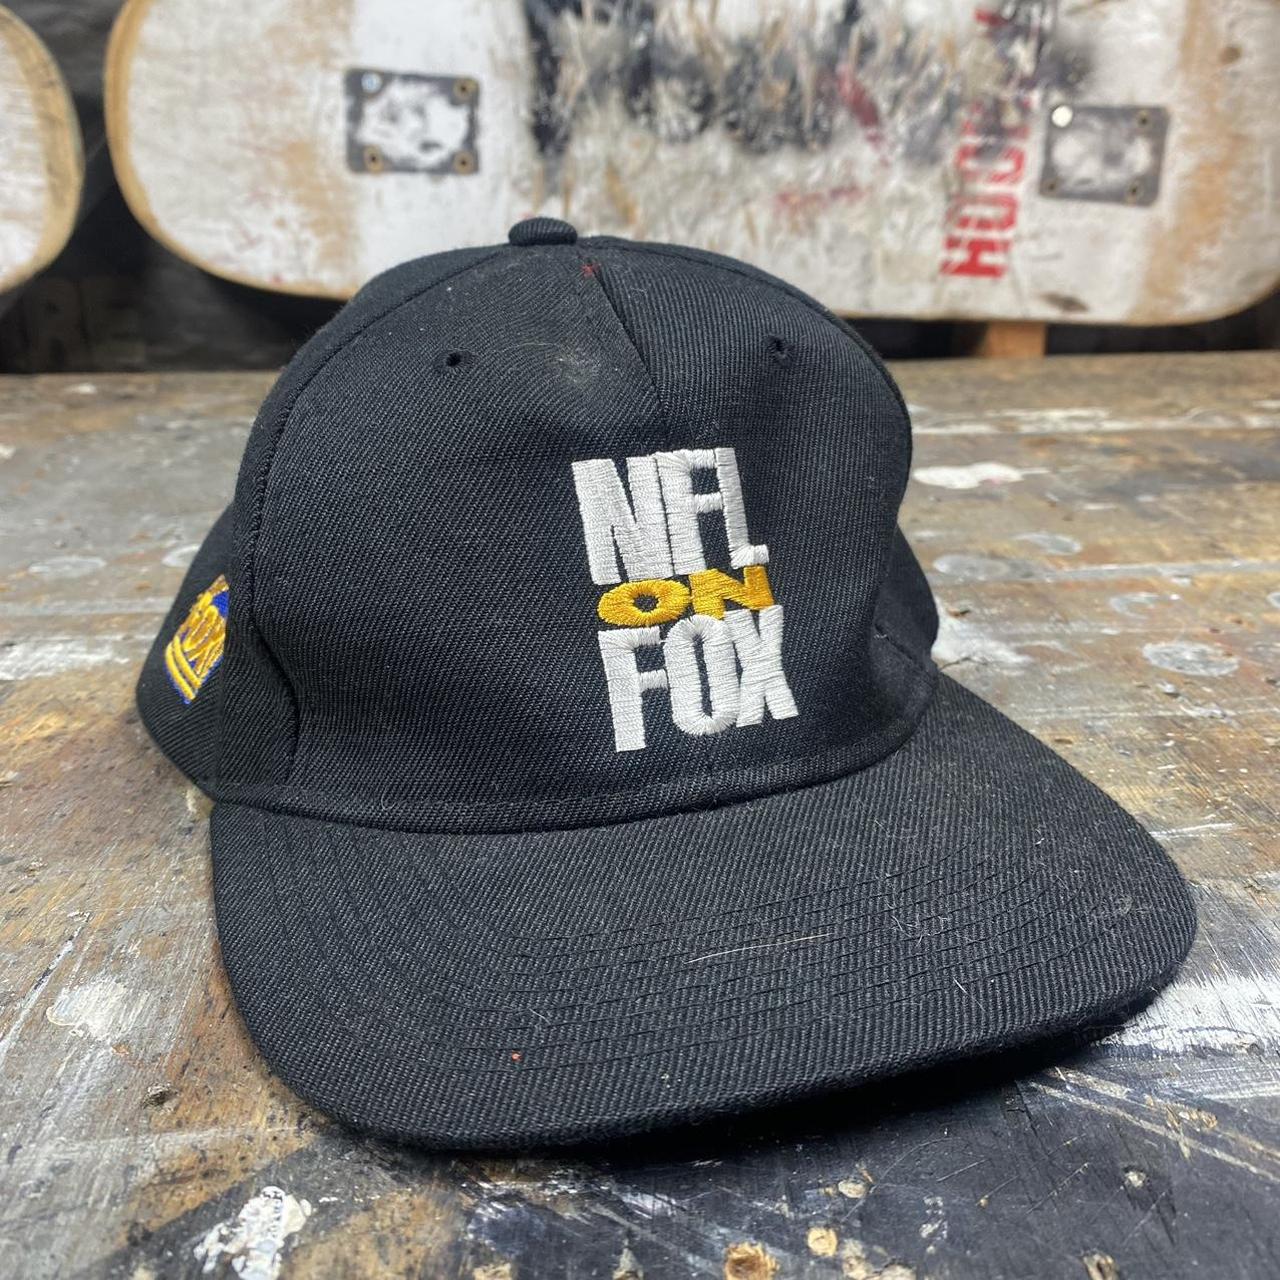 NFL Men's Hat - Black